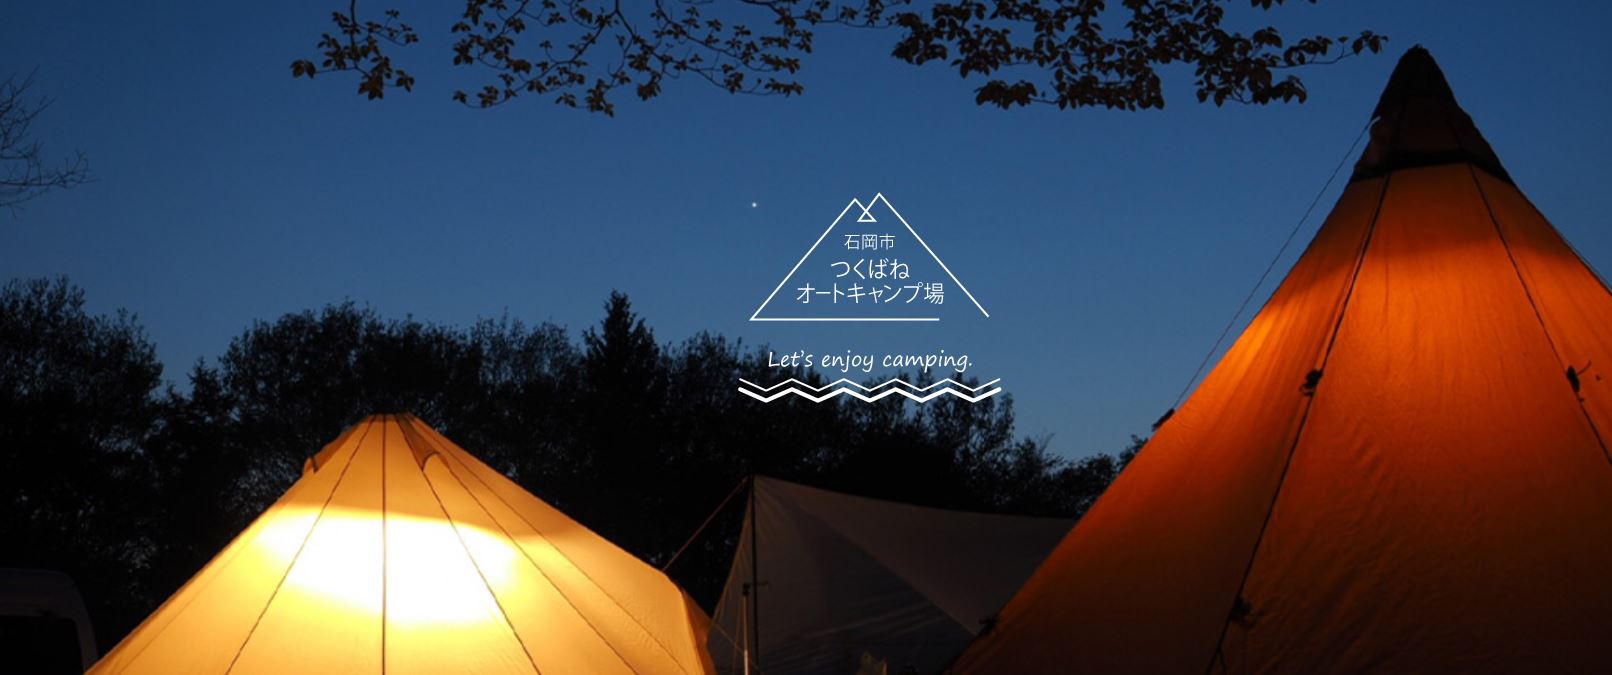 【石岡市つくばねオートキャンプ場】ファミリーキャンパーにおすすめなキャンプ場！